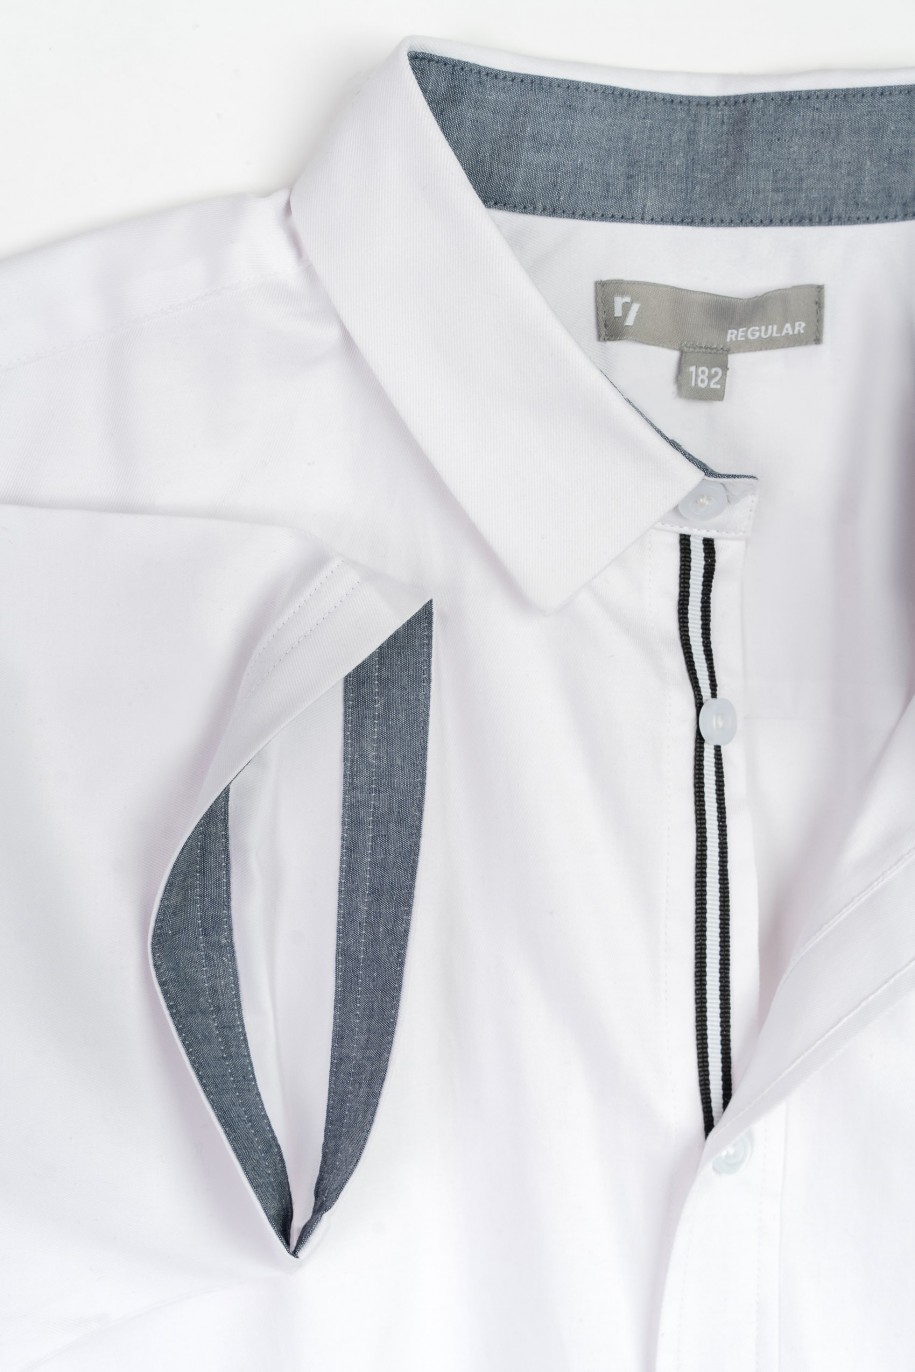 Biała koszula o regularnym kroju z krótkim rękawem - 47363